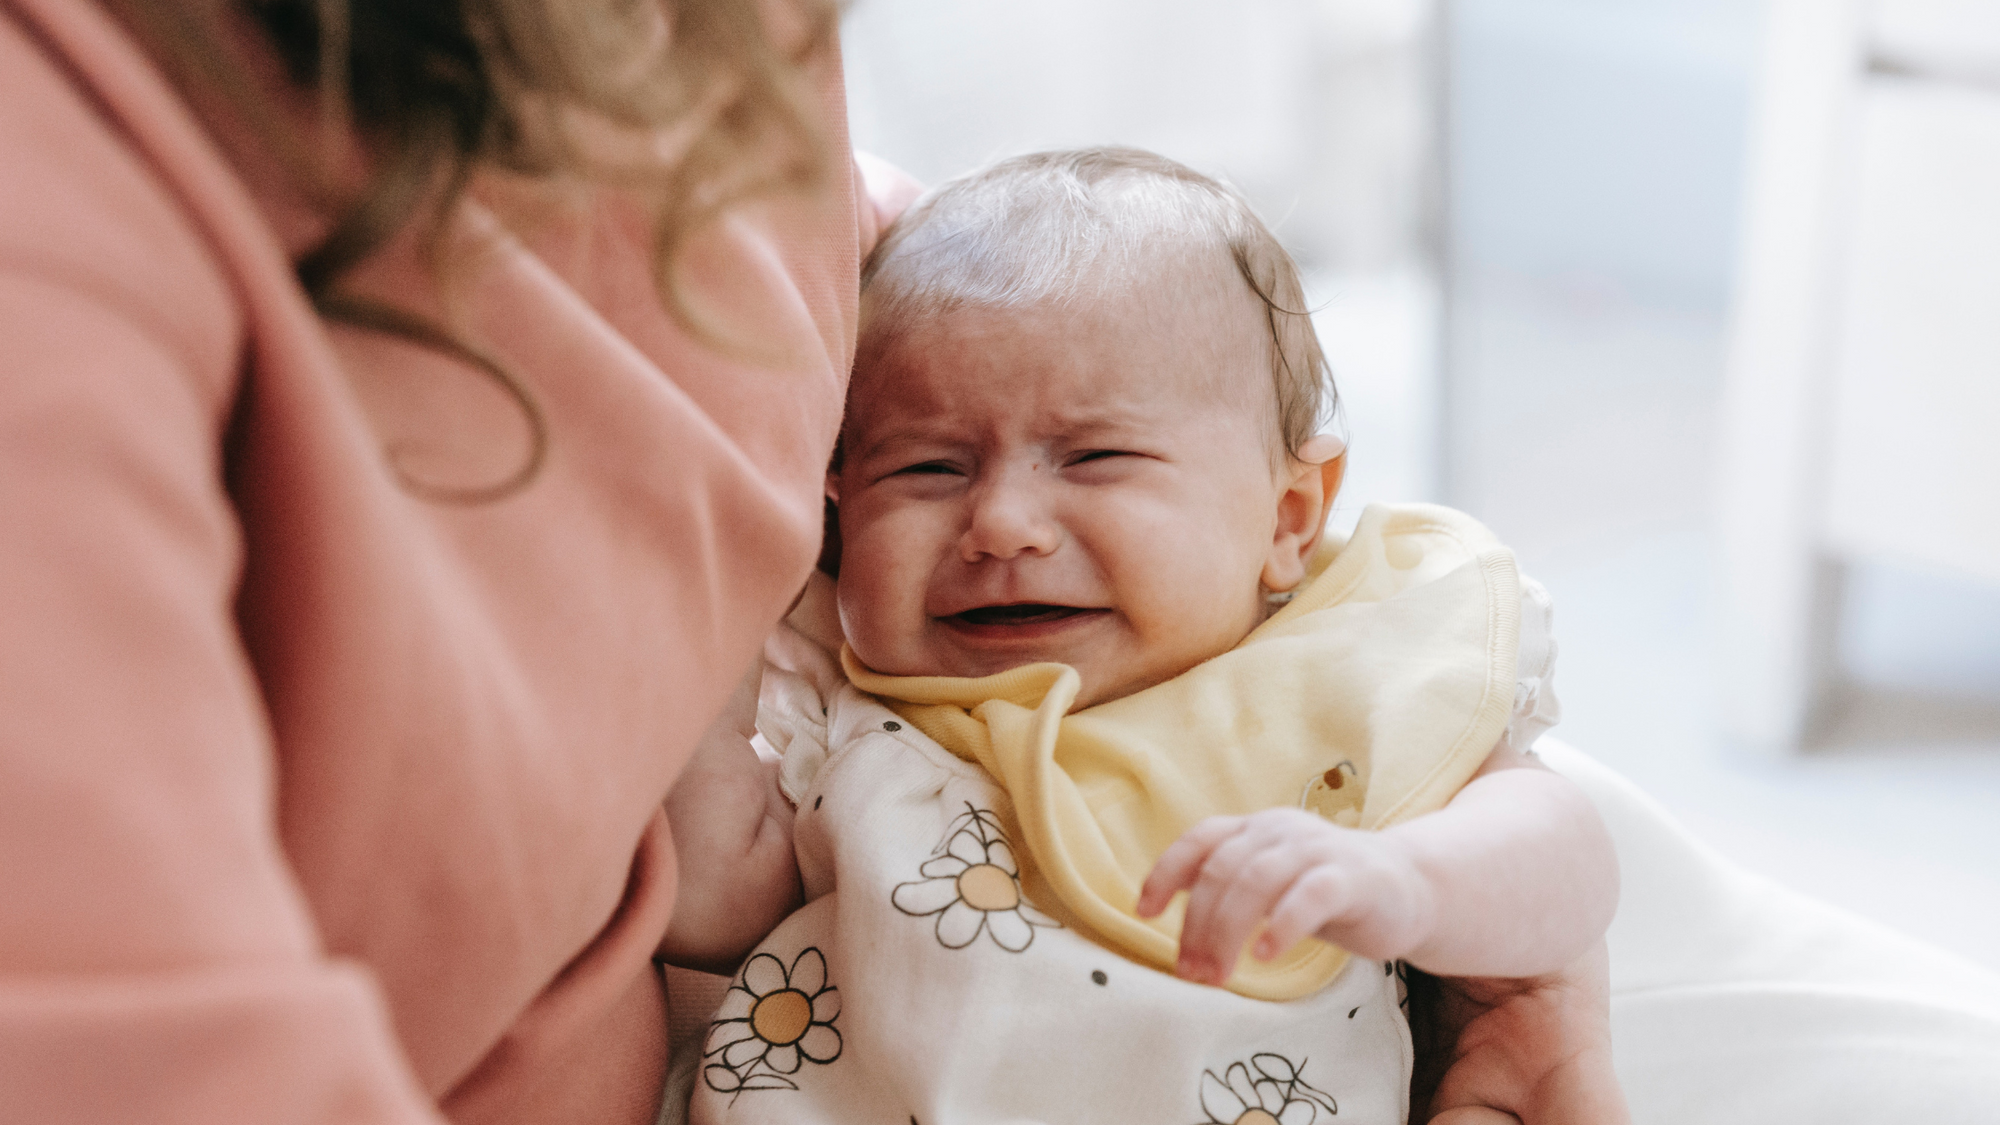 Ruido blanco para bebés: ¿Qué es y cómo funciona? - Kinedu Blog